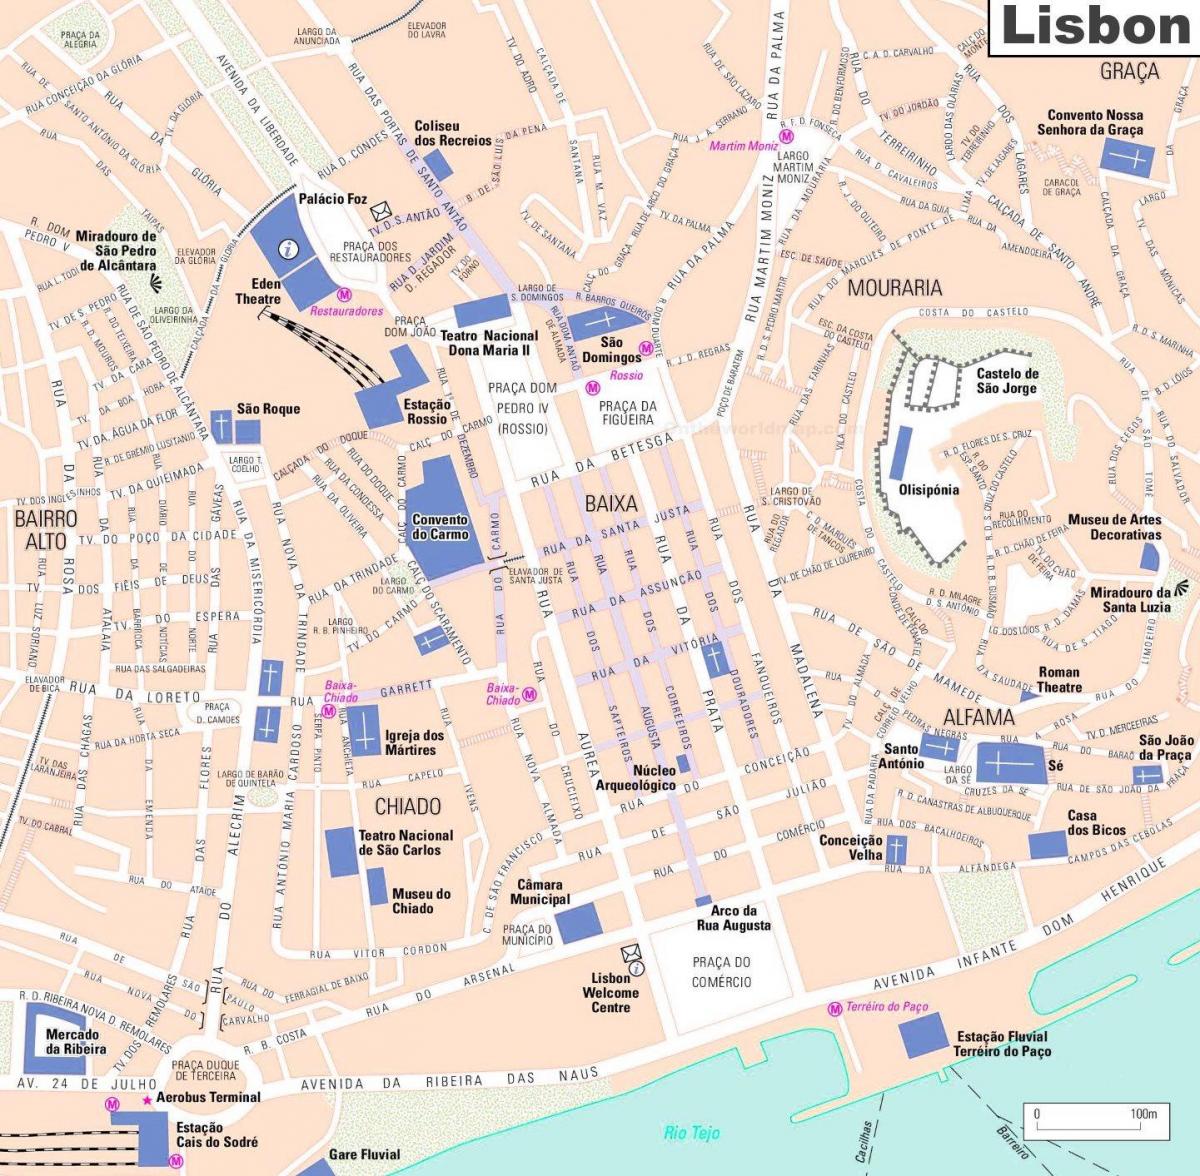 mapa do centro da cidade de lisboa, portugal